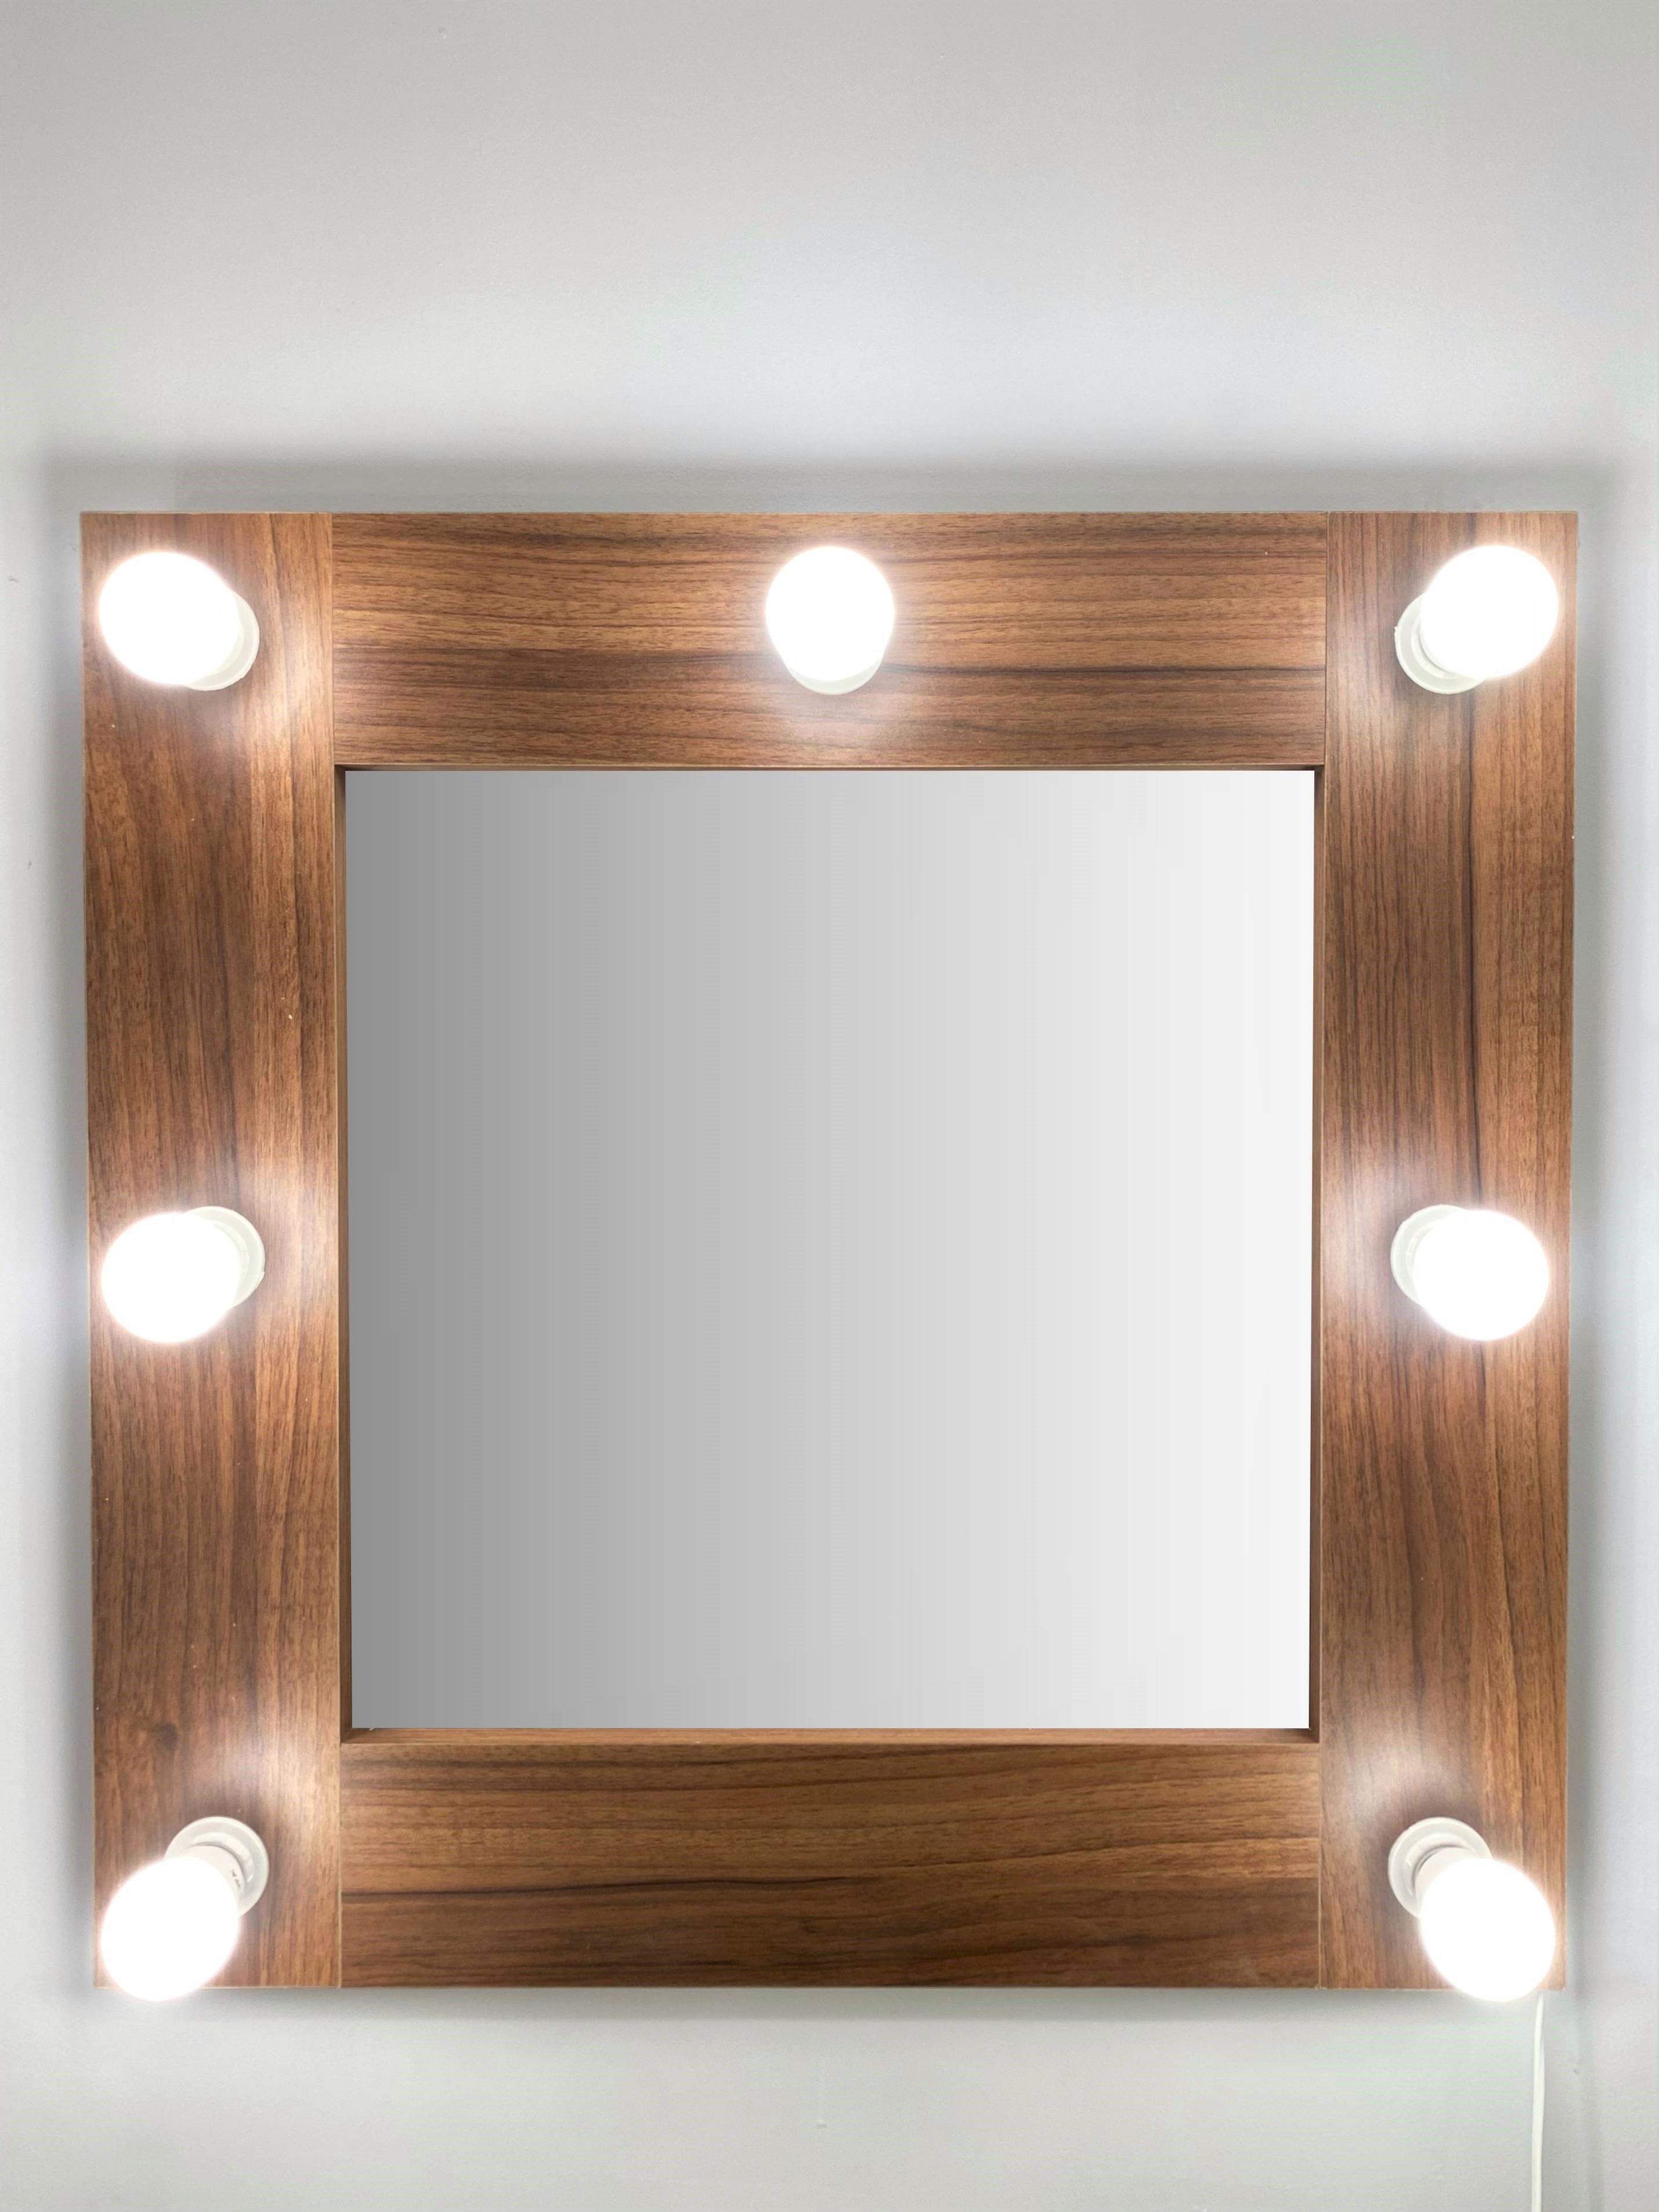 91053073 Гримерное зеркало с лампочками 60x60 см цвет орех STLM-0458983 BEAUTYUP